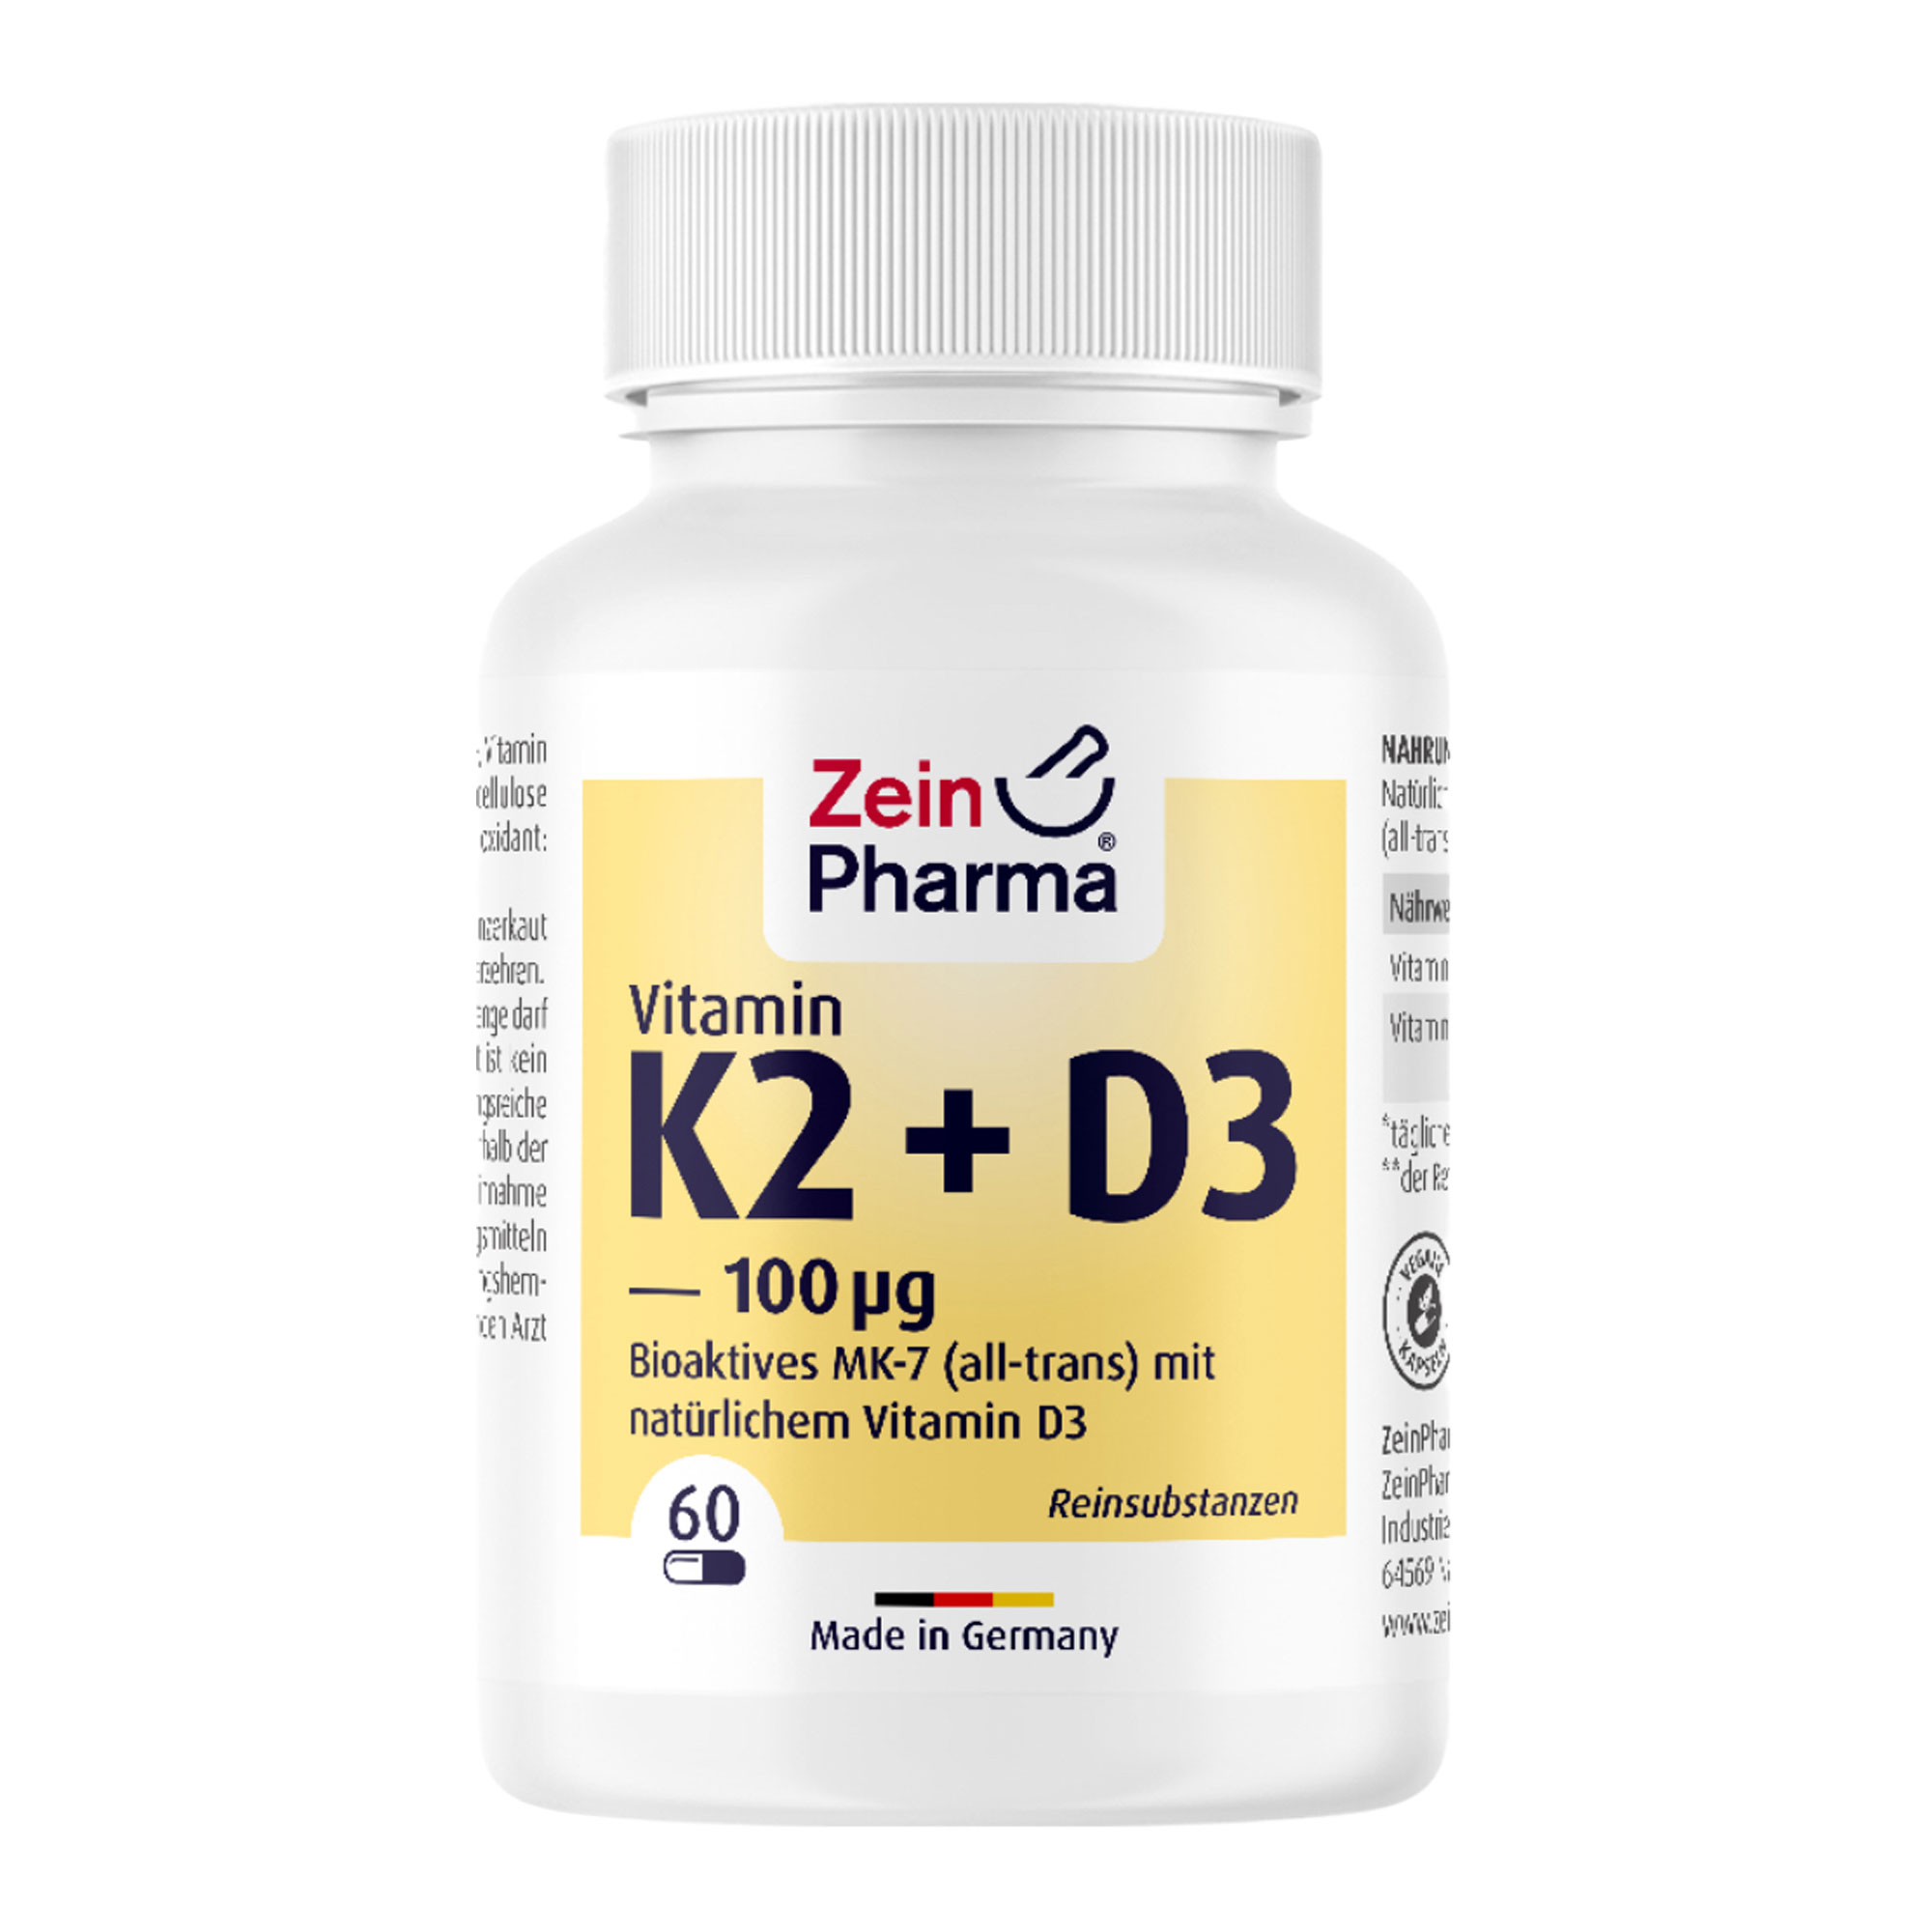 Nahrungsergänzungsmittel mit natürlichem Vitamin K2 als Menachinon-7 (all-trans) und Vitamin D3.